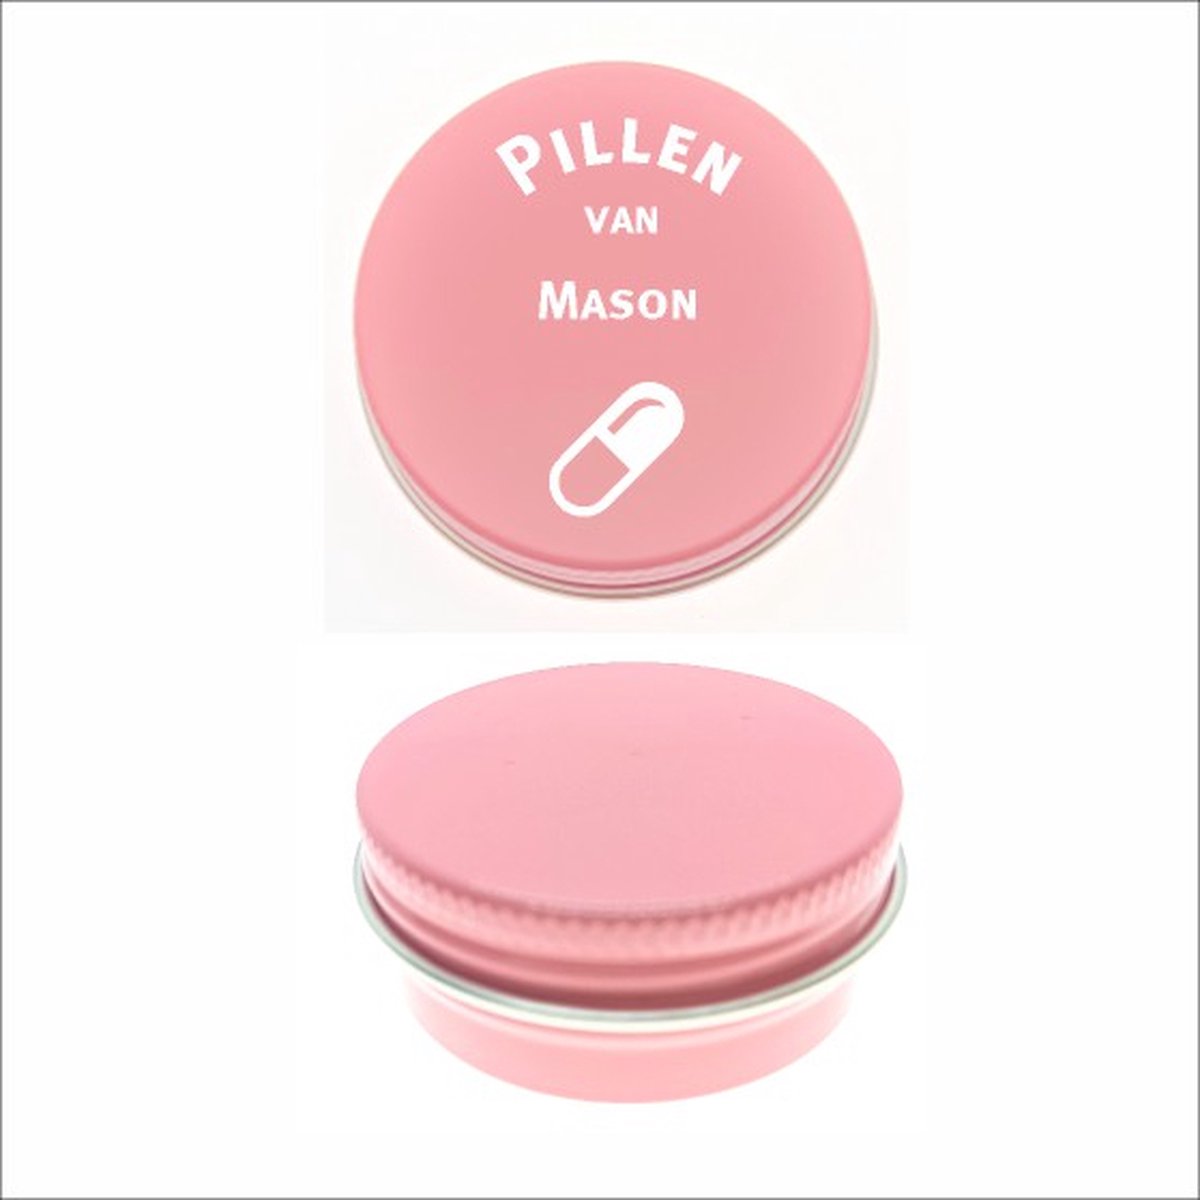 Pillen Blikje Met Naam Gravering - Mason